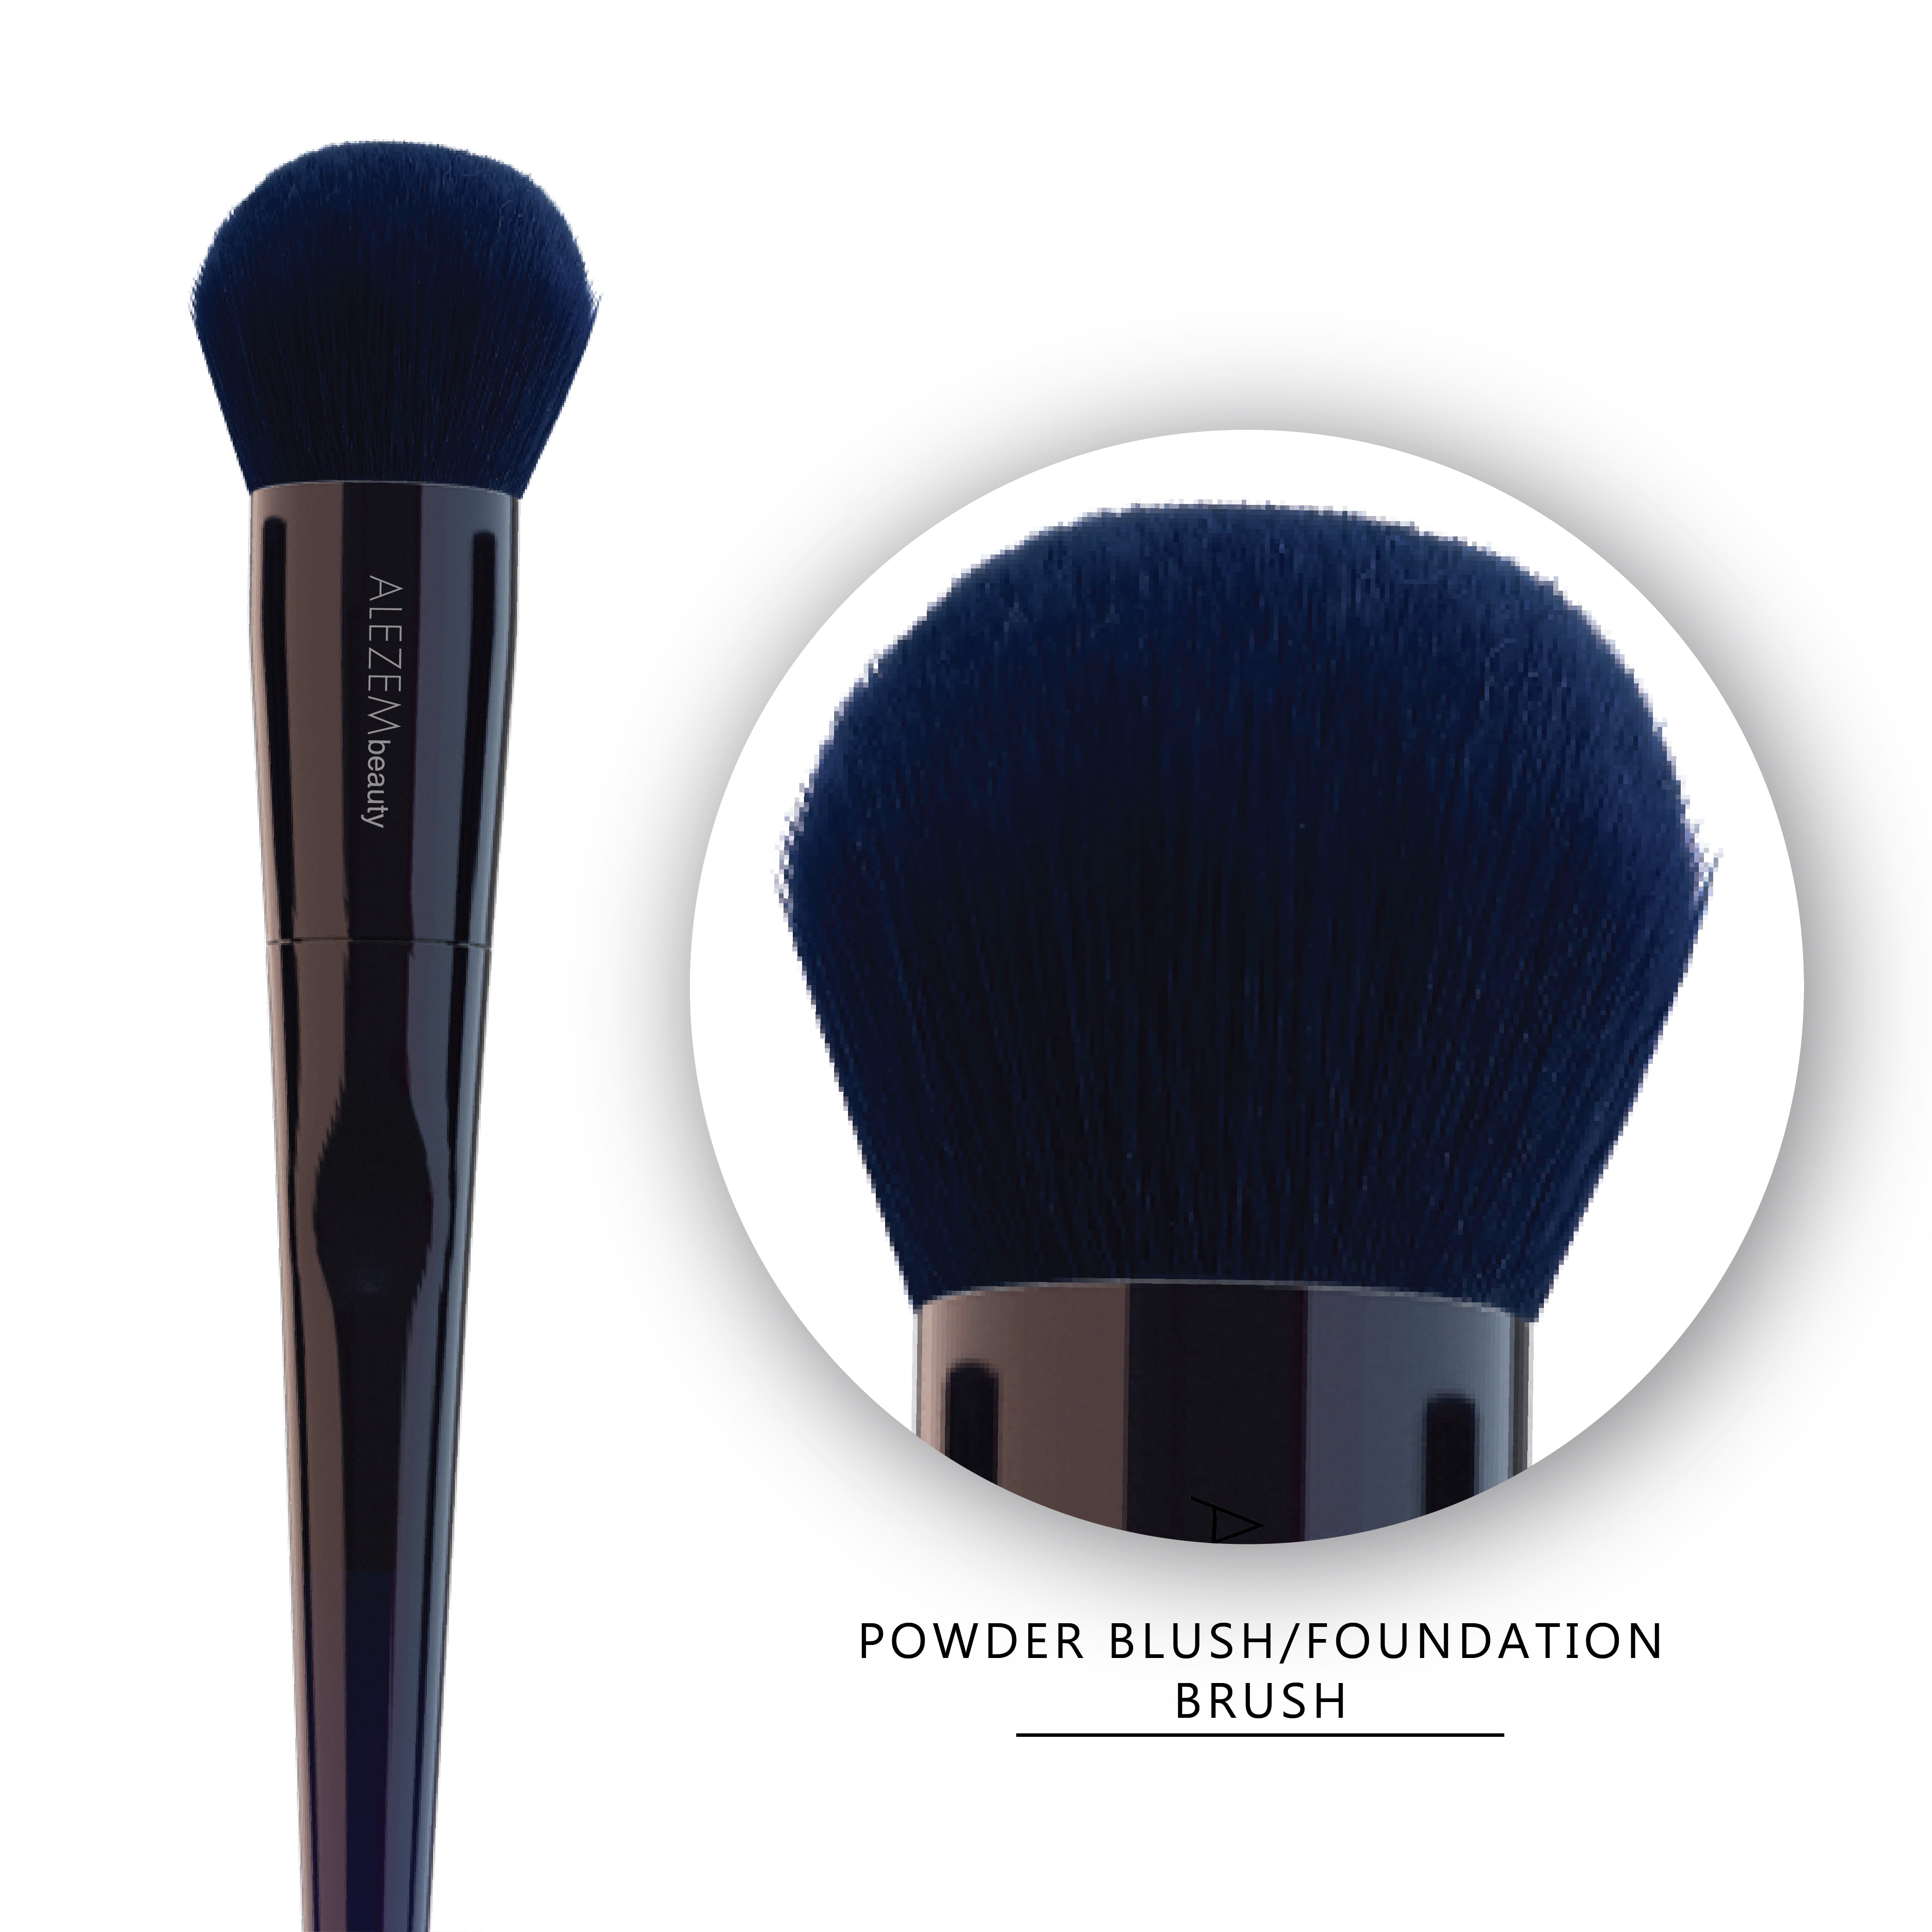 Alezem Pro Makeup Brushes Complete Set